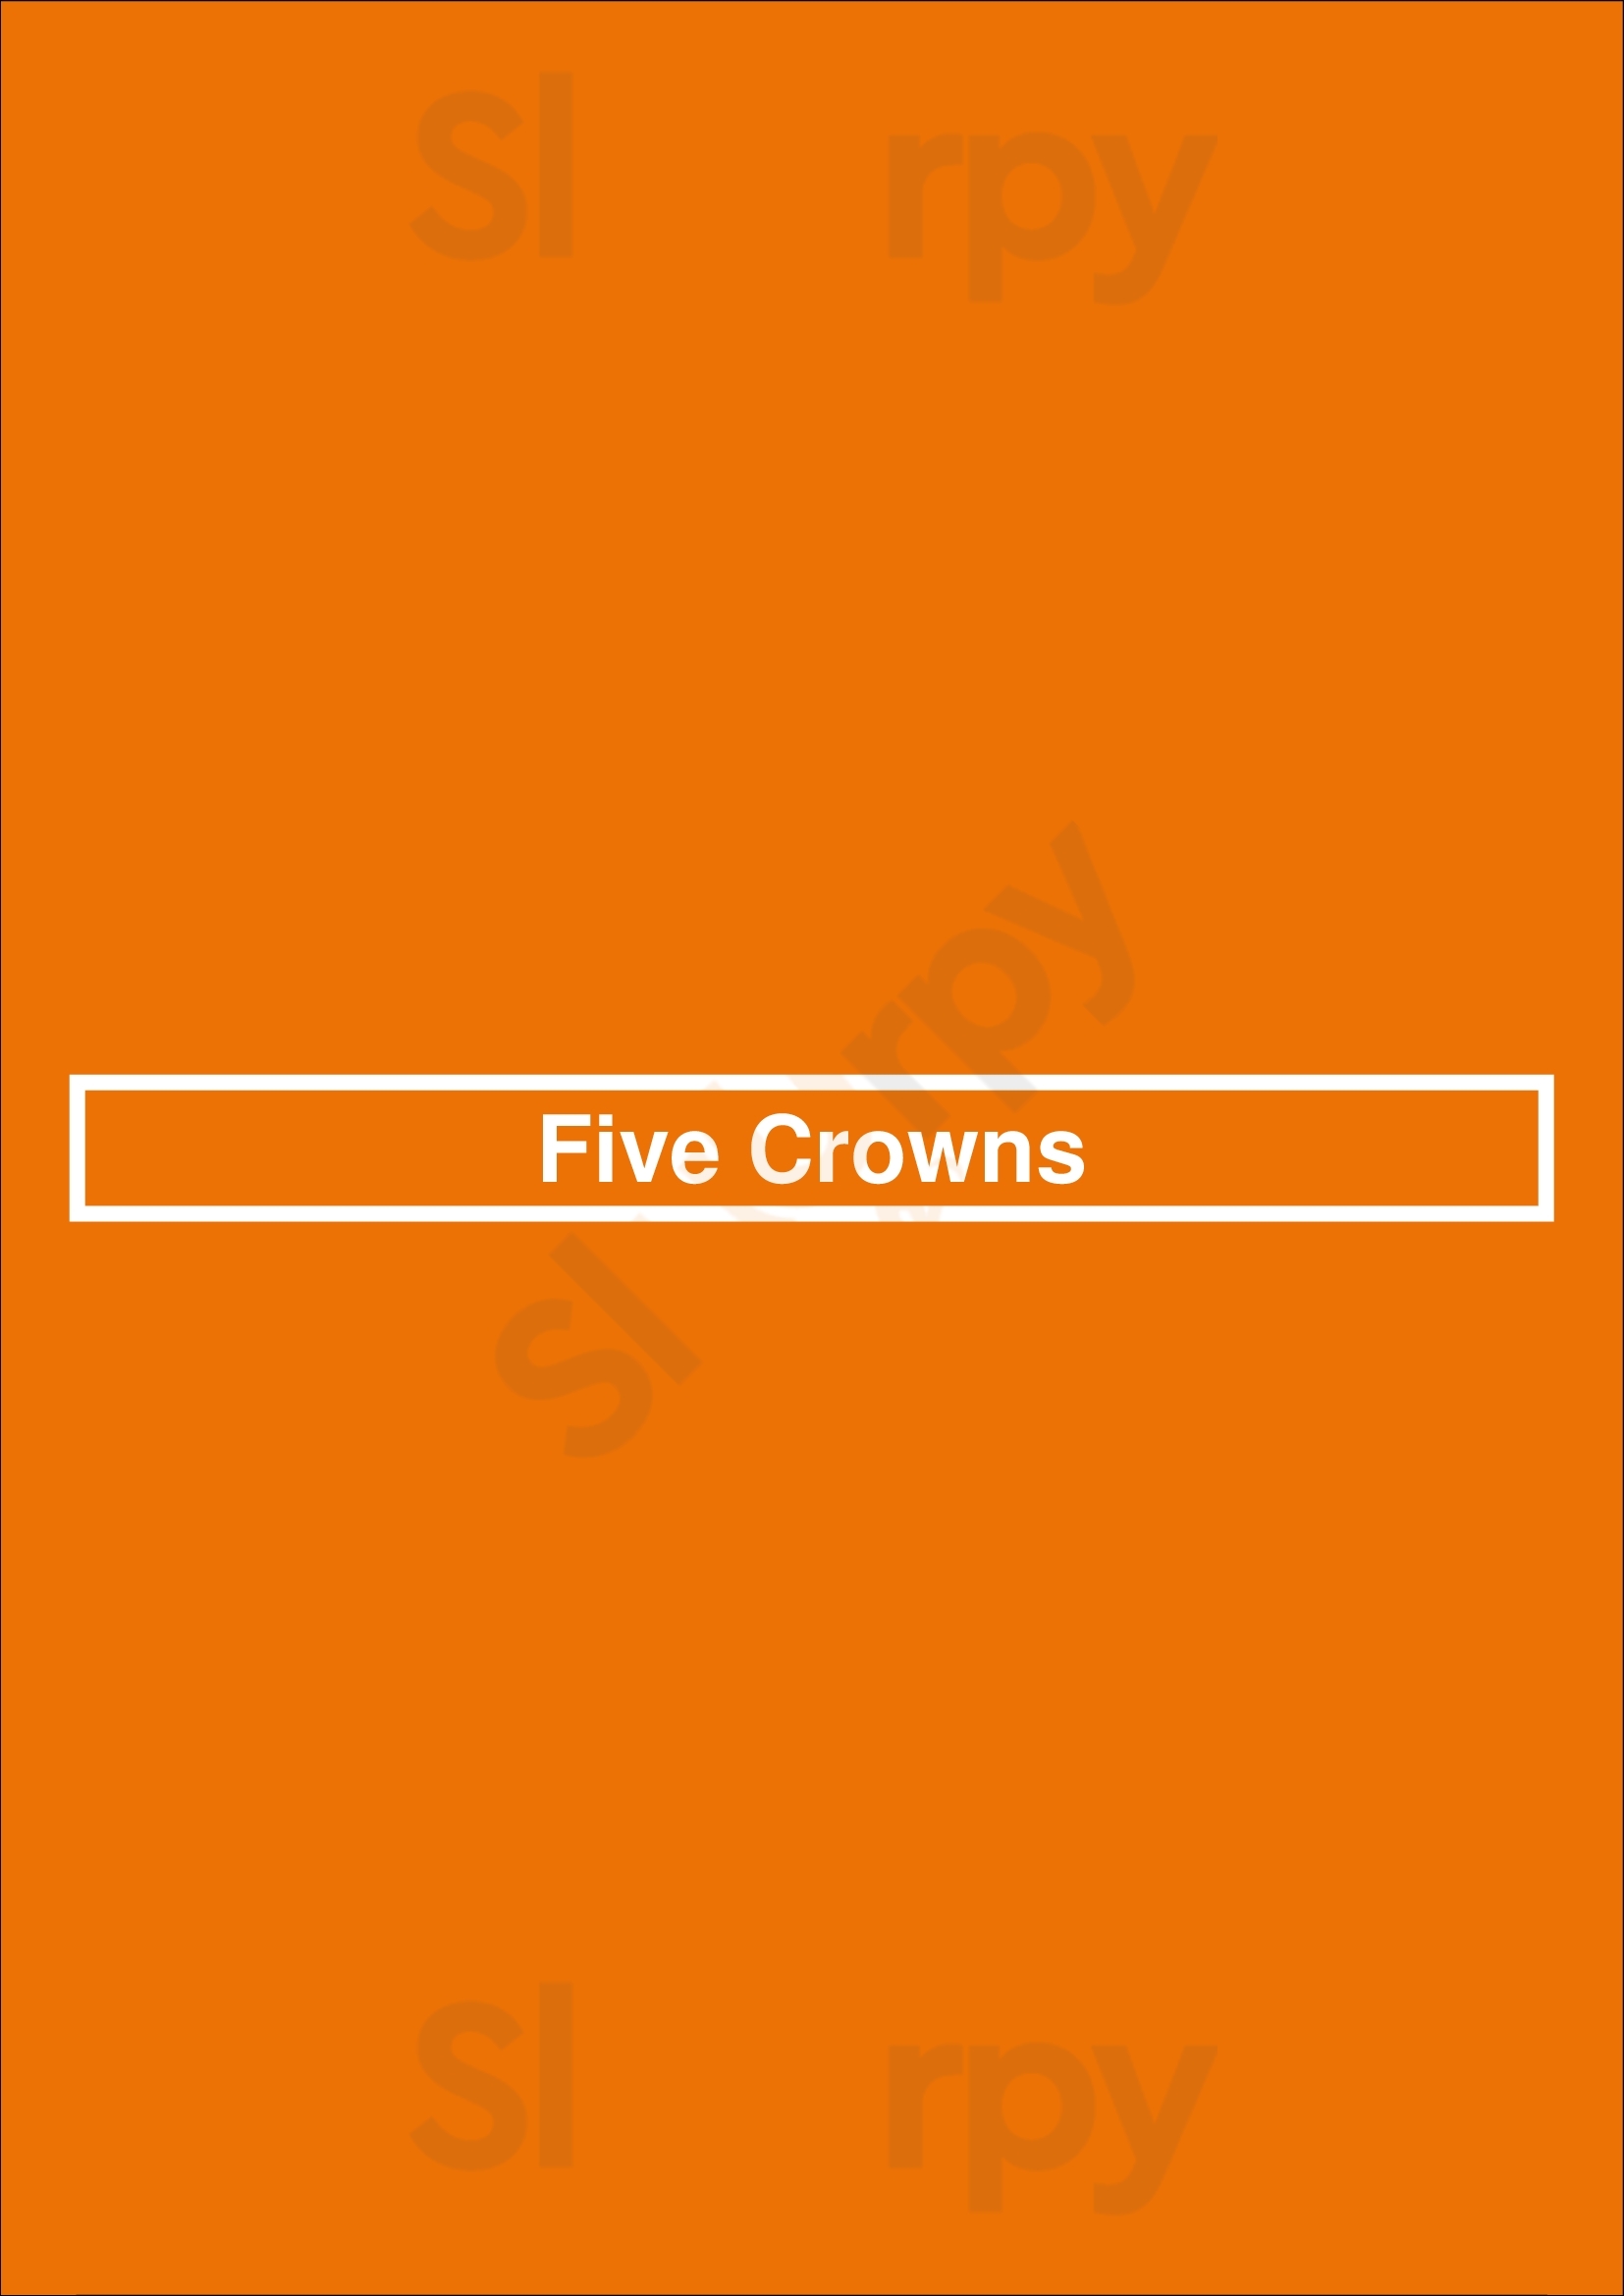 Five Crowns Corona del Mar Menu - 1